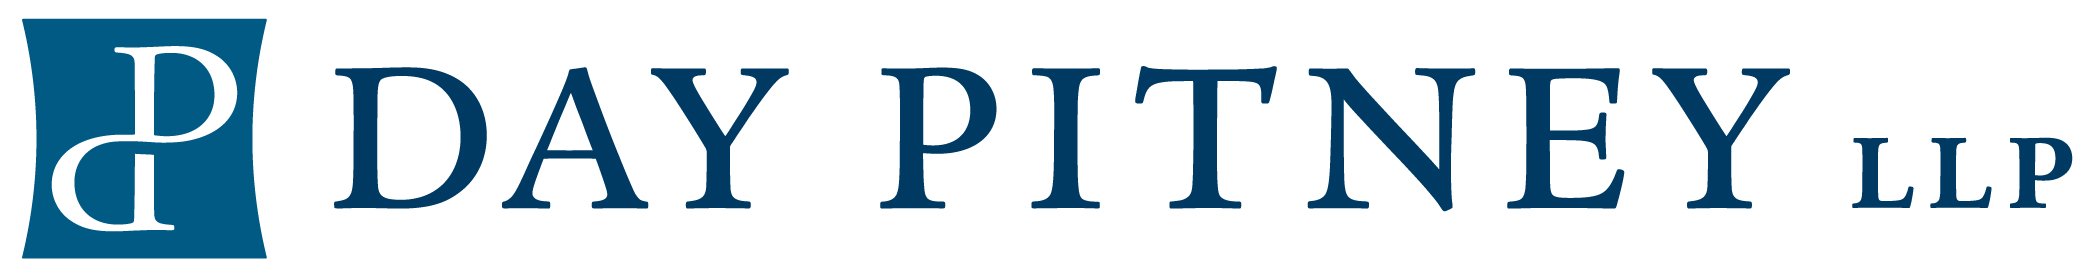 Day Pitney logo_RGB-300dpi-JPEG.jpg